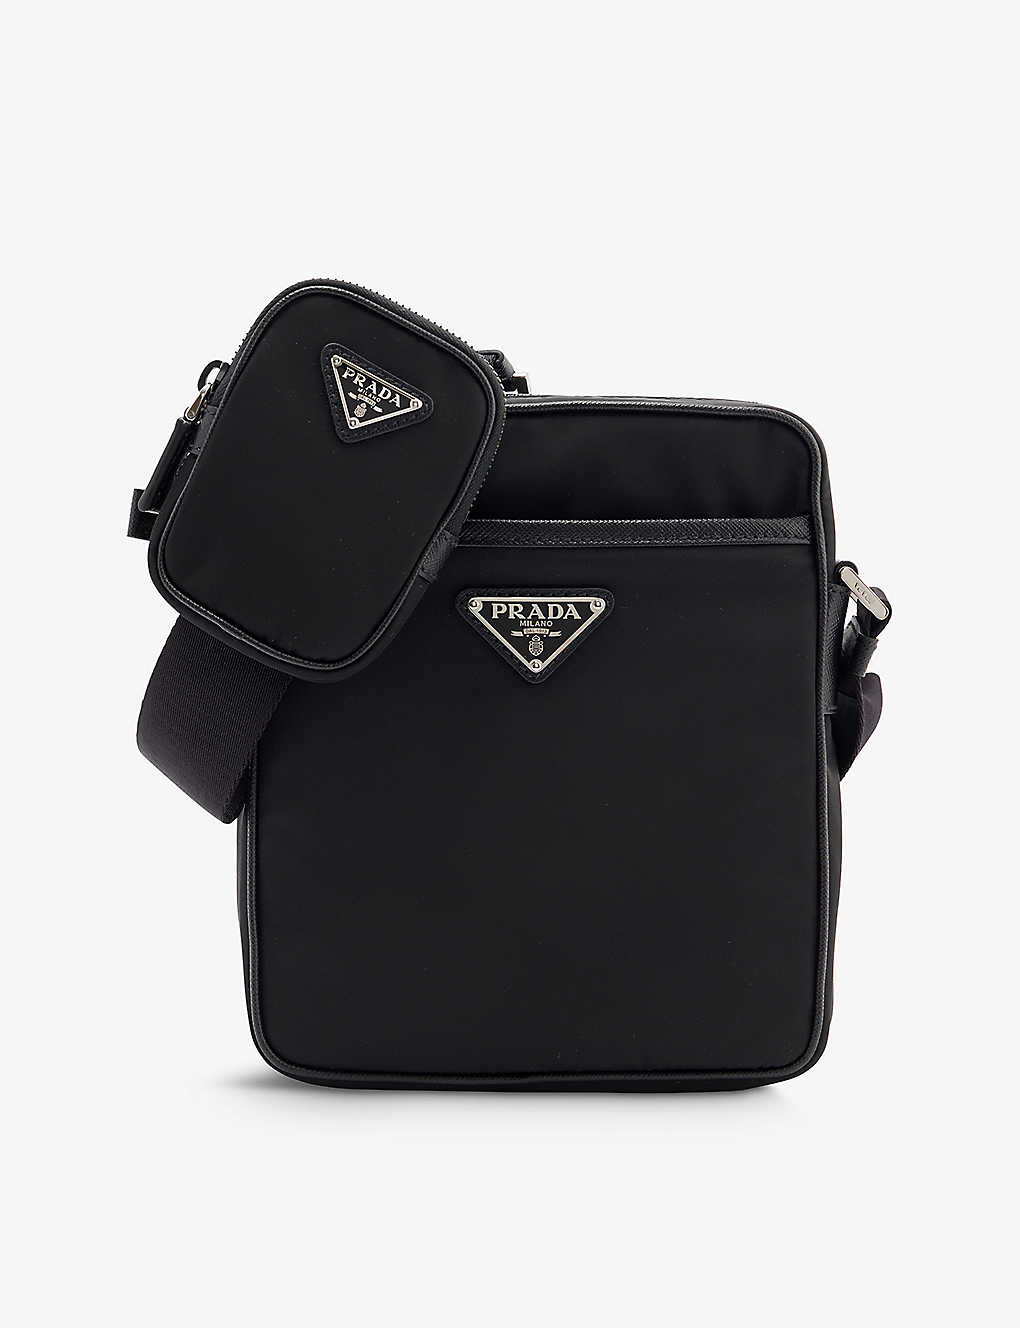 PRADA - Brand-plaque mini-pouch shell cross-body bag | Selfridges.com